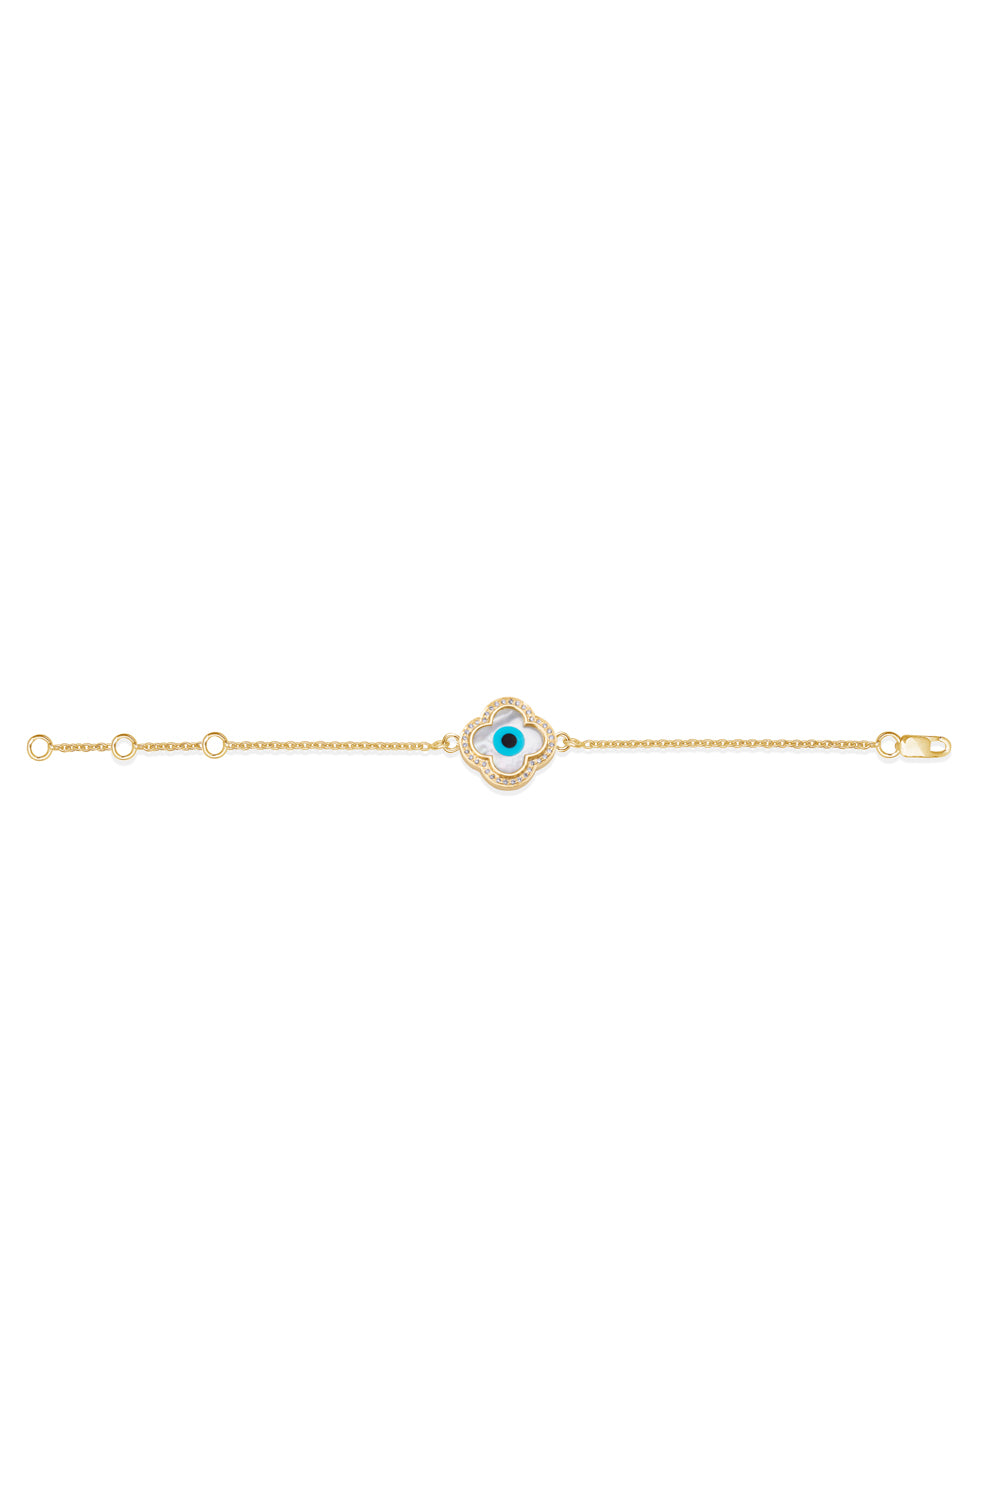 Small Clover Evil Eye Diamond Chain 14KT Gold Bracelet